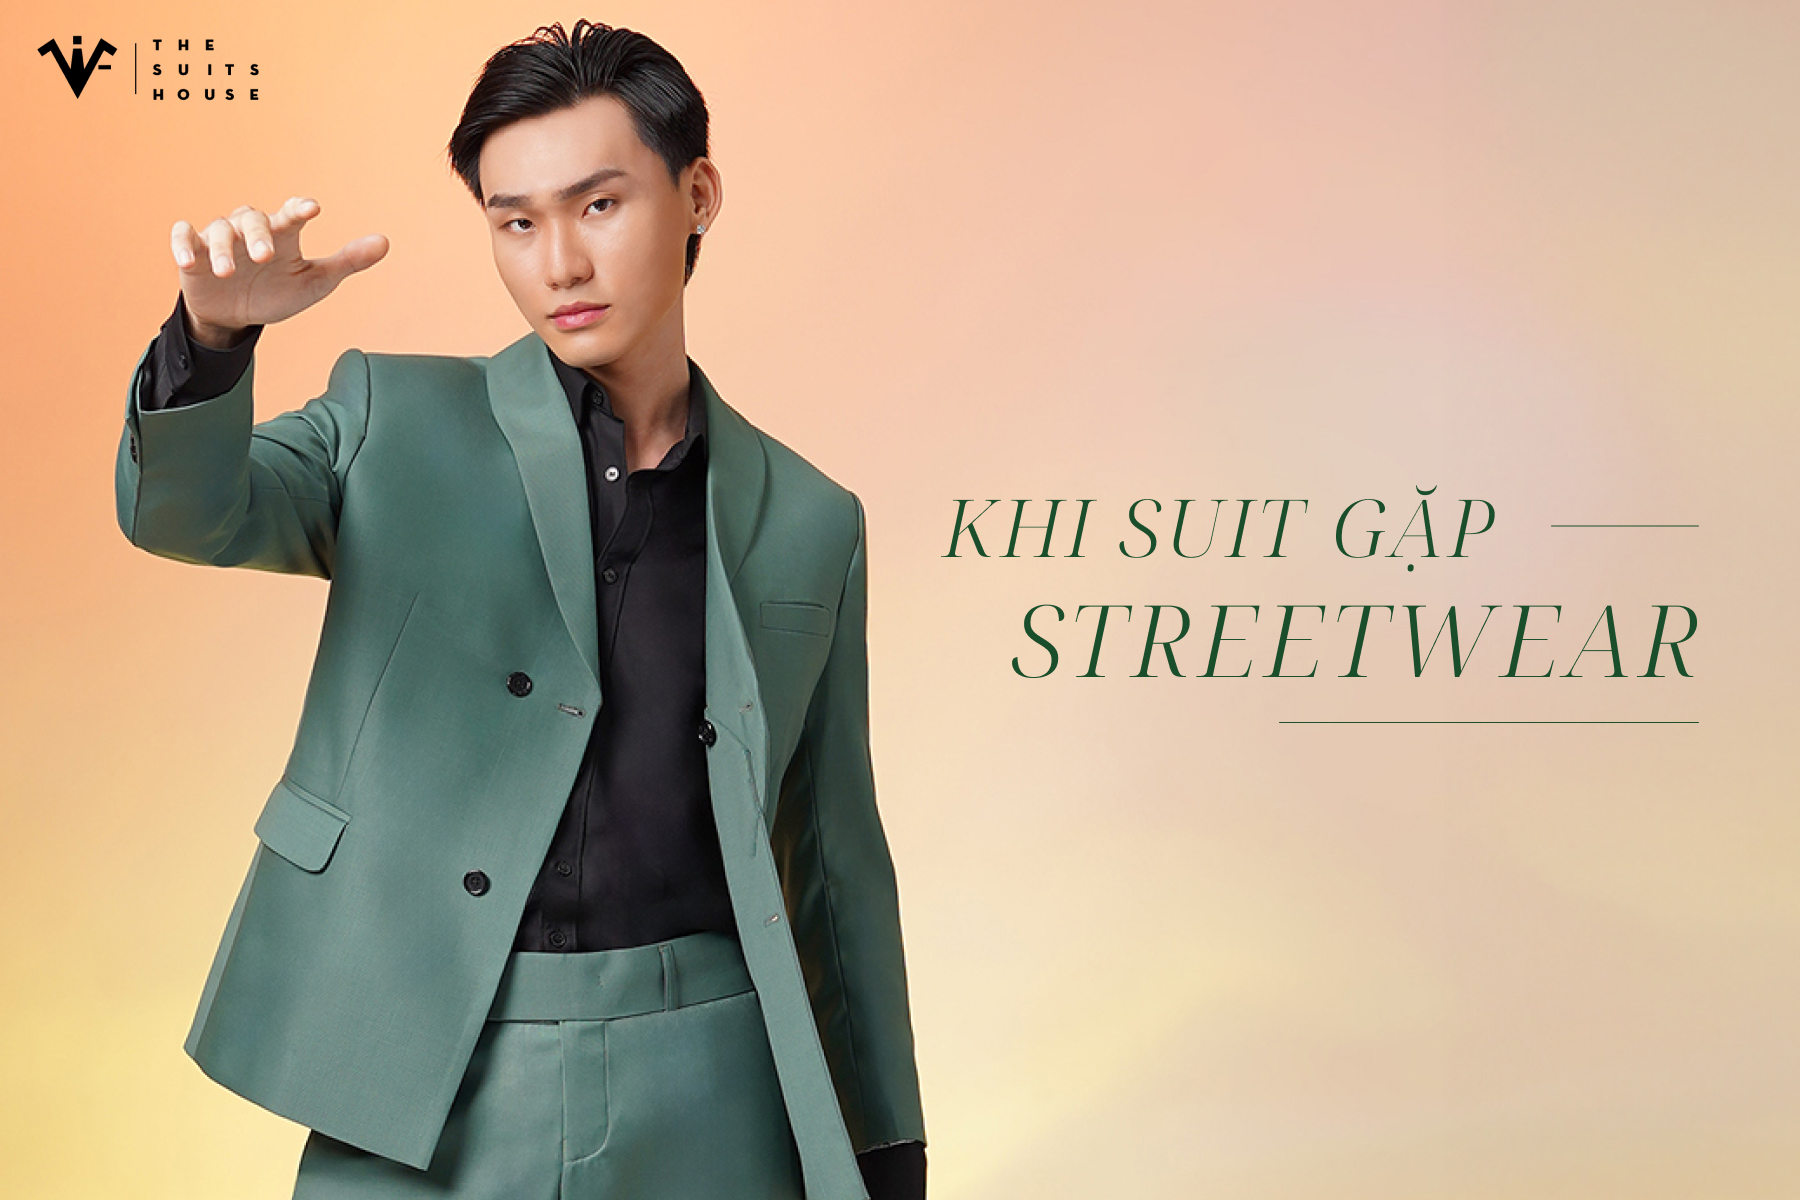 Khi Suit Gặp Streetwear: Bí Quyết Kết Hợp Độc Đáo Cho Phong Cách Thời Trang Hiện Đại